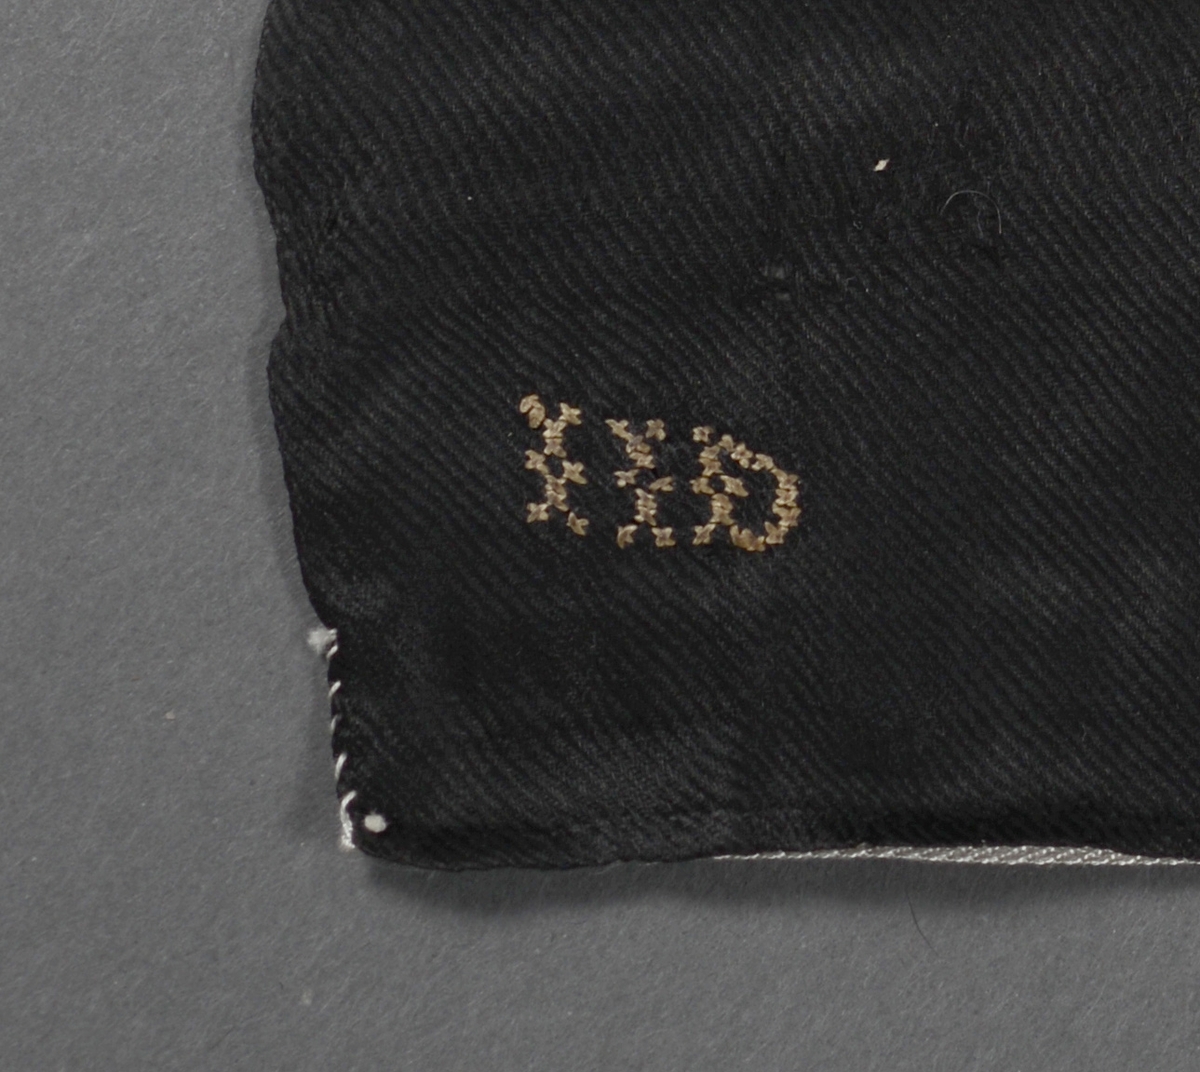 Firkantet tørkle hvor to sider er kantet inn for hånd. Korsstingbroderte initialer "IID" i et av hjørnene.